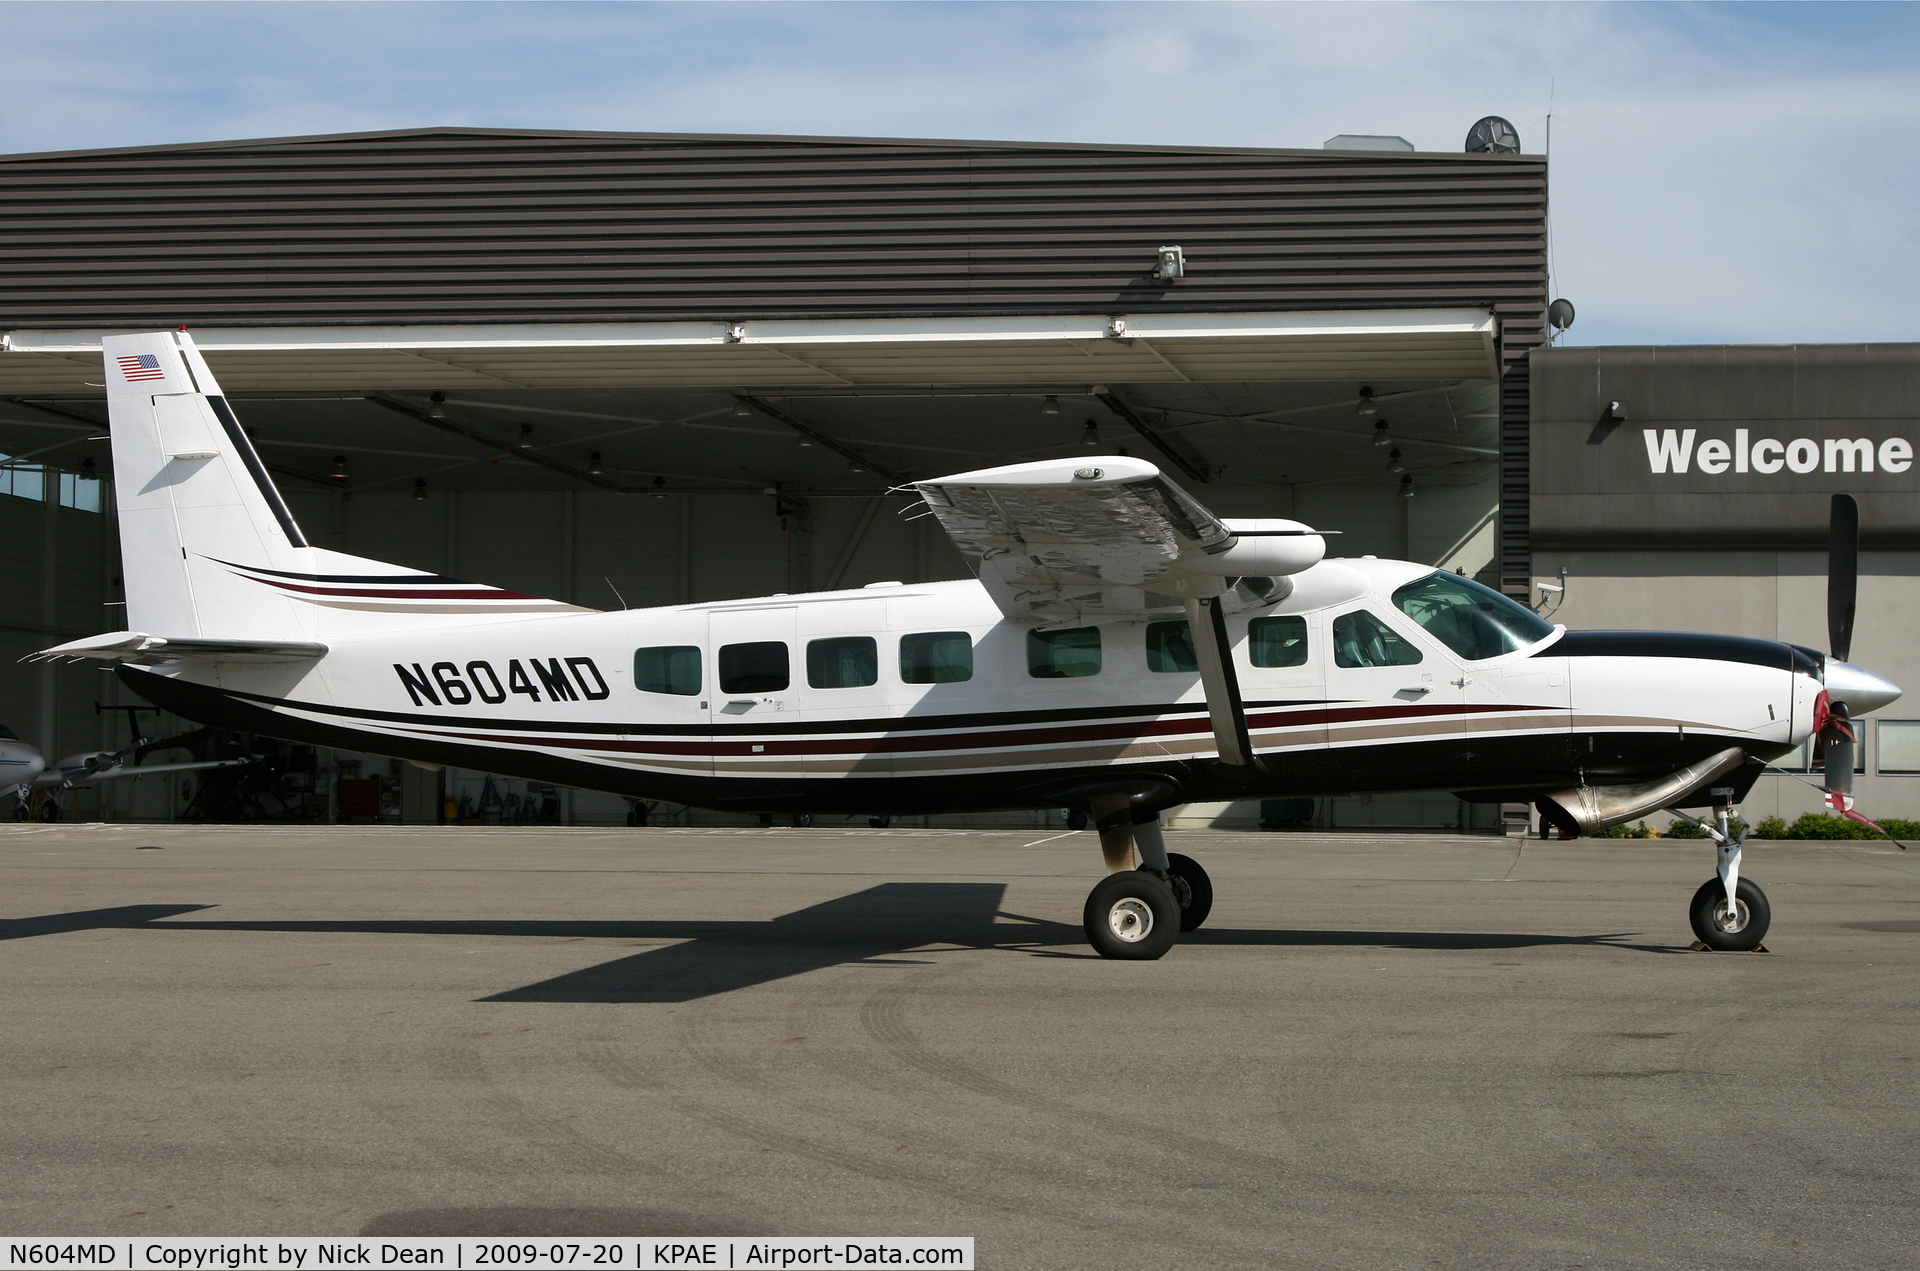 N604MD, 2004 Cessna 208B C/N 208B1075, KPAE